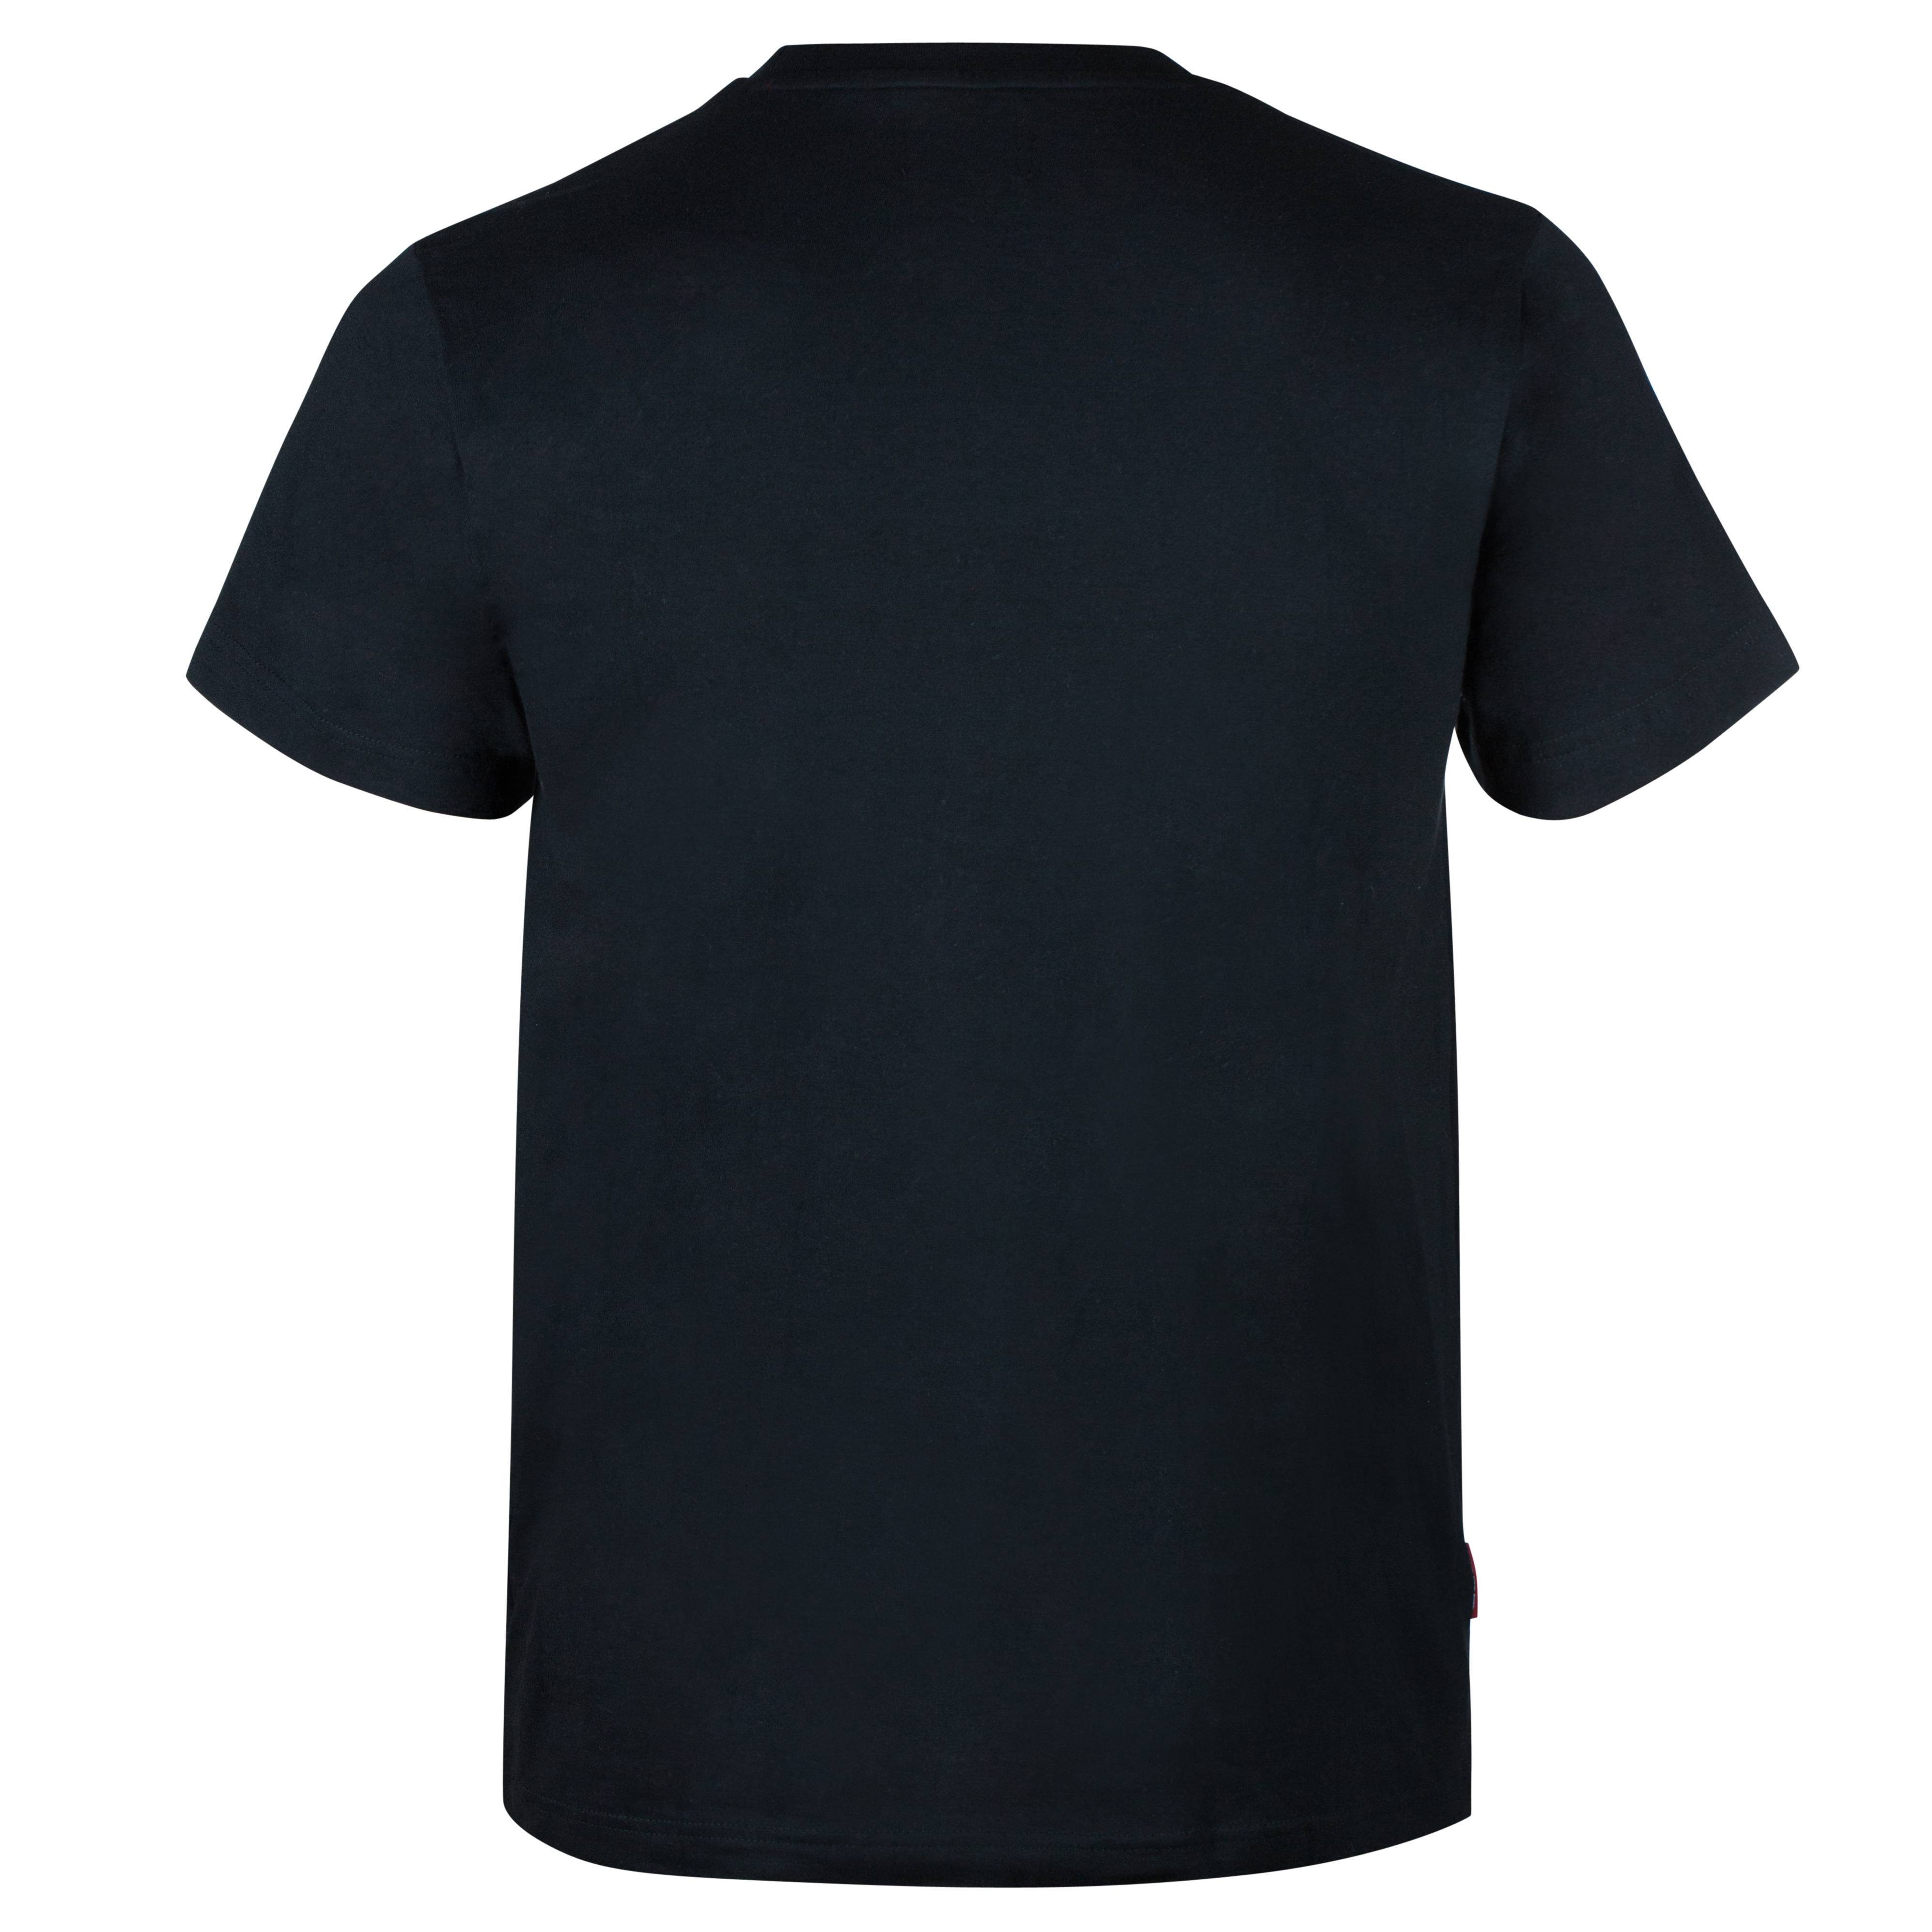 Finn-Tack Pro Sporty Unisexe T-shirt en coton pour superposition ou Summer Wear 